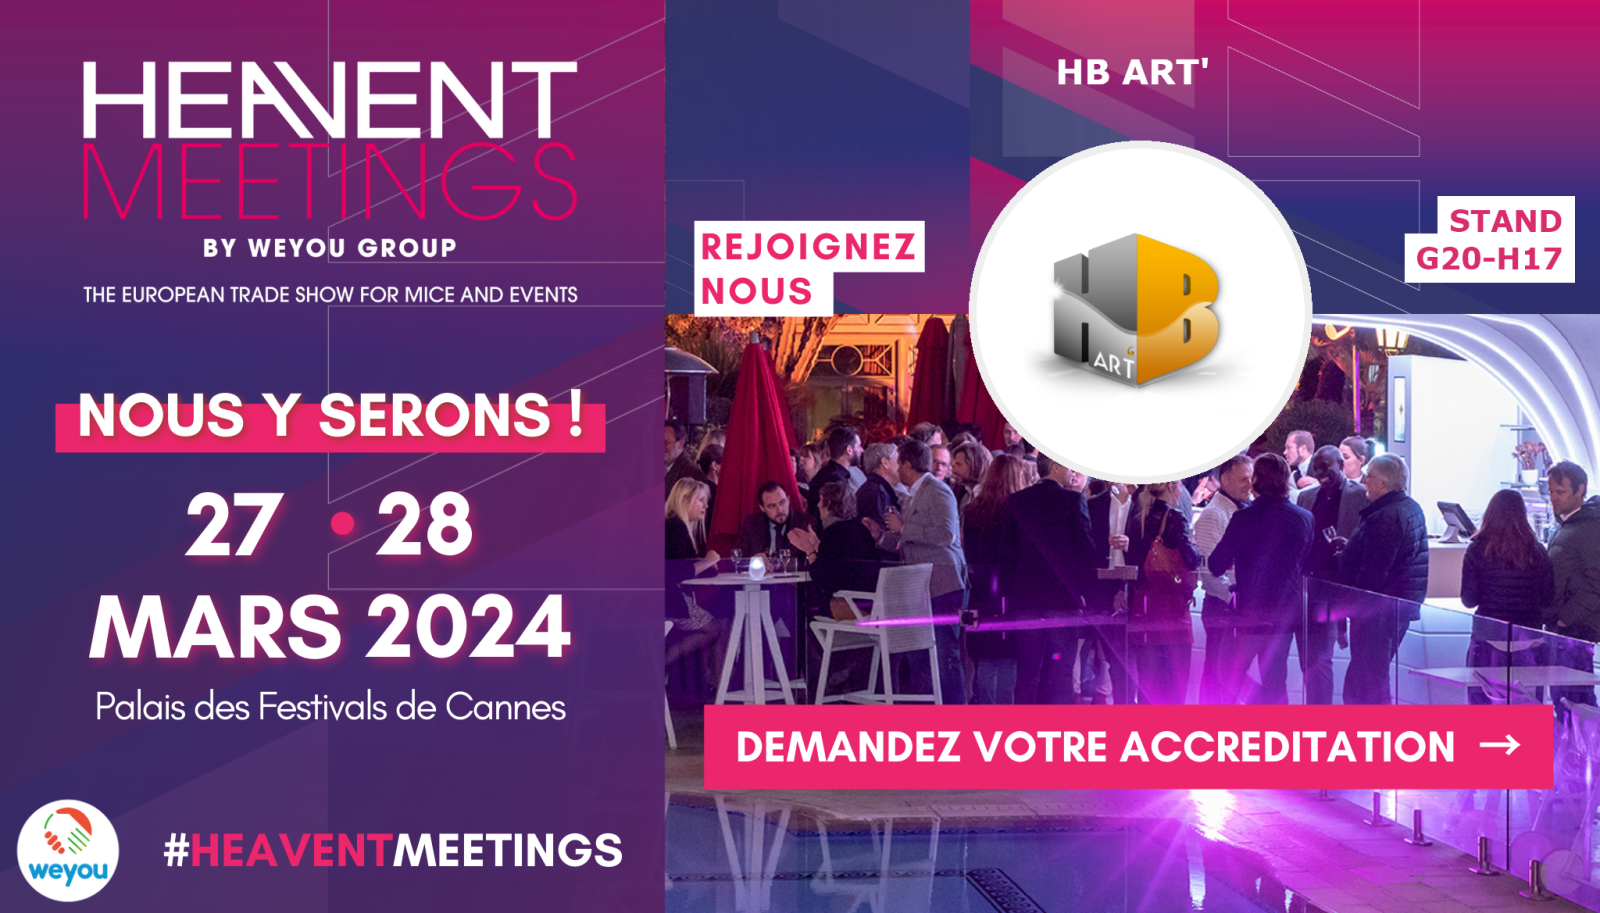 Retrouvez nous à l'Heavent Meetings les 27 et 28 mars 2024 à Cannes